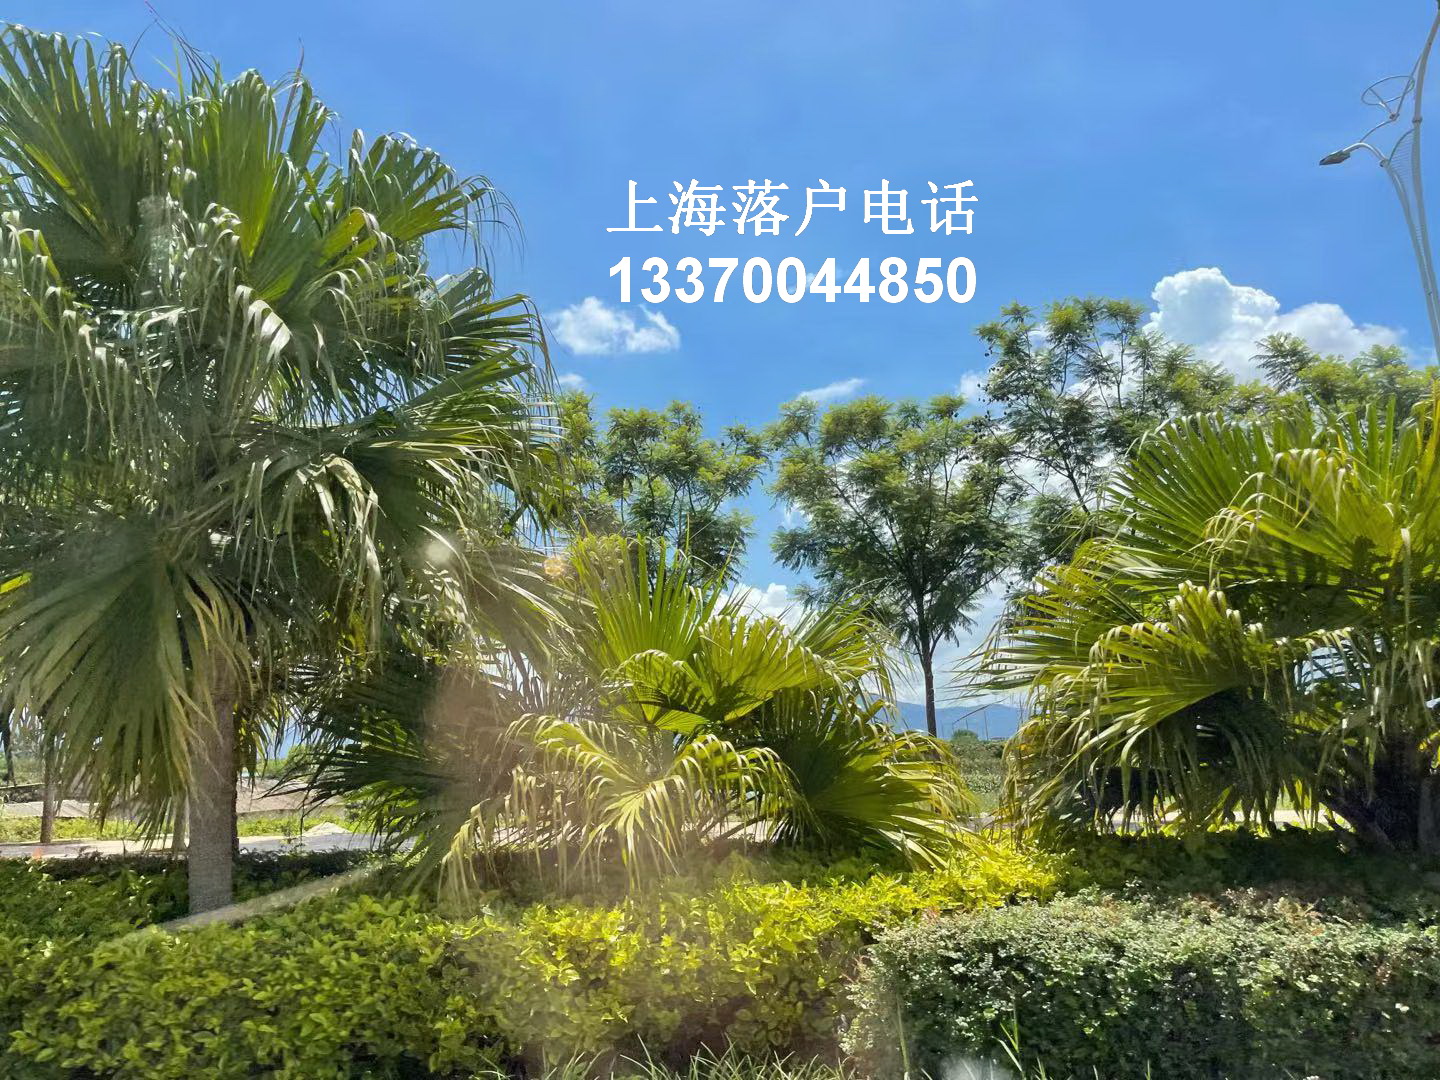 2022/05/31持有《上海市居住证》人员申办本市常住户口公示名单